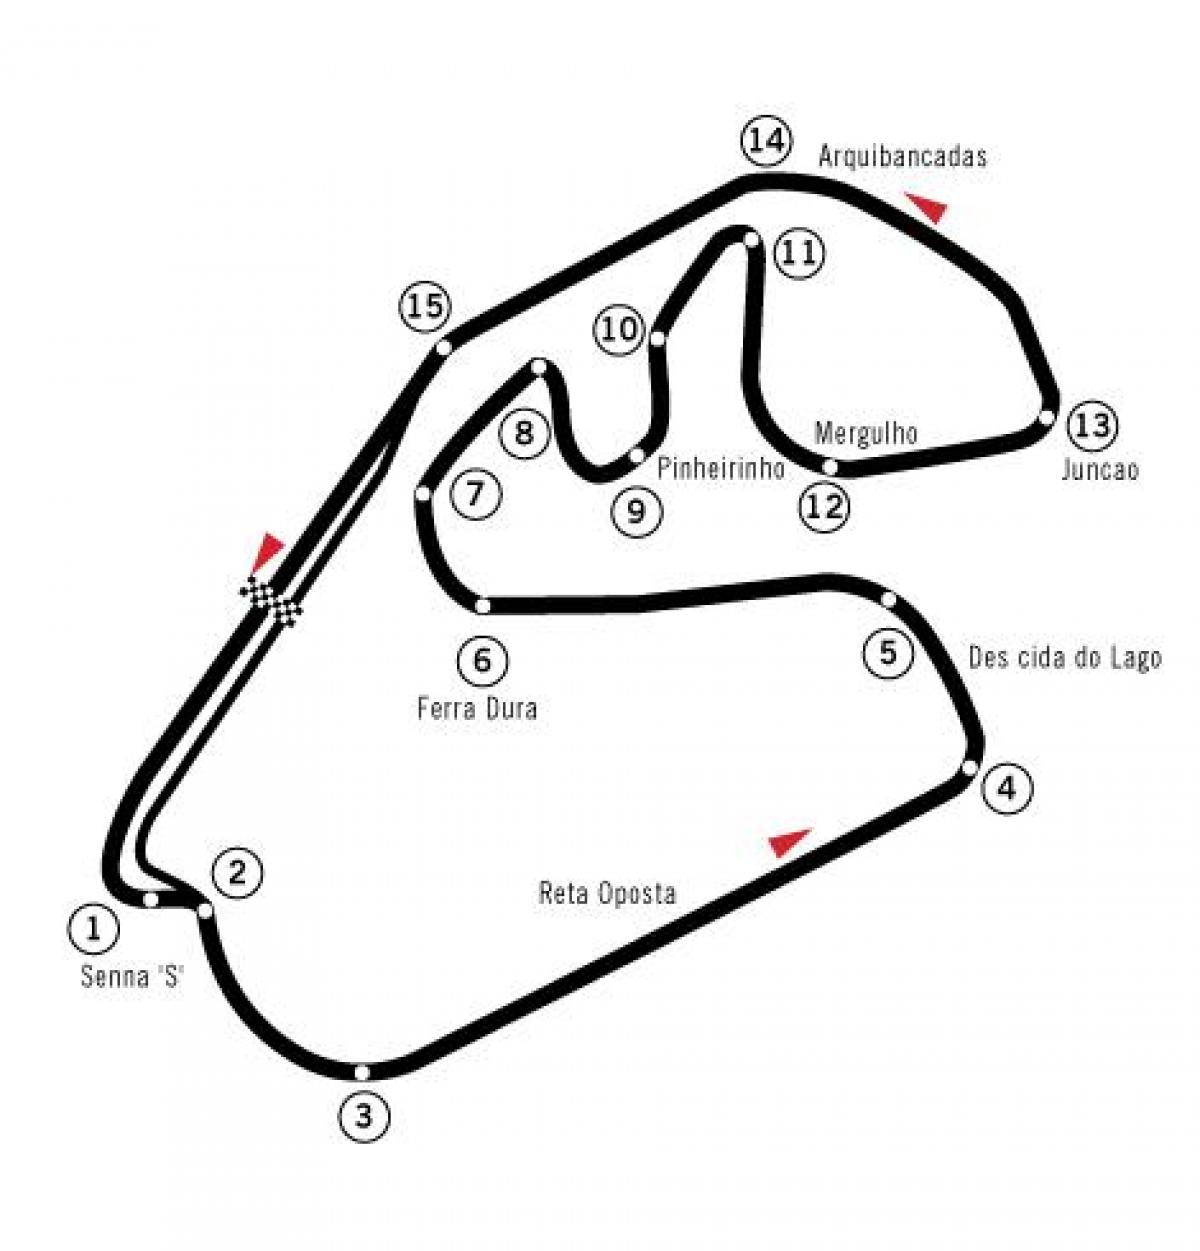 Karta över Autódromo José Carlos Pace